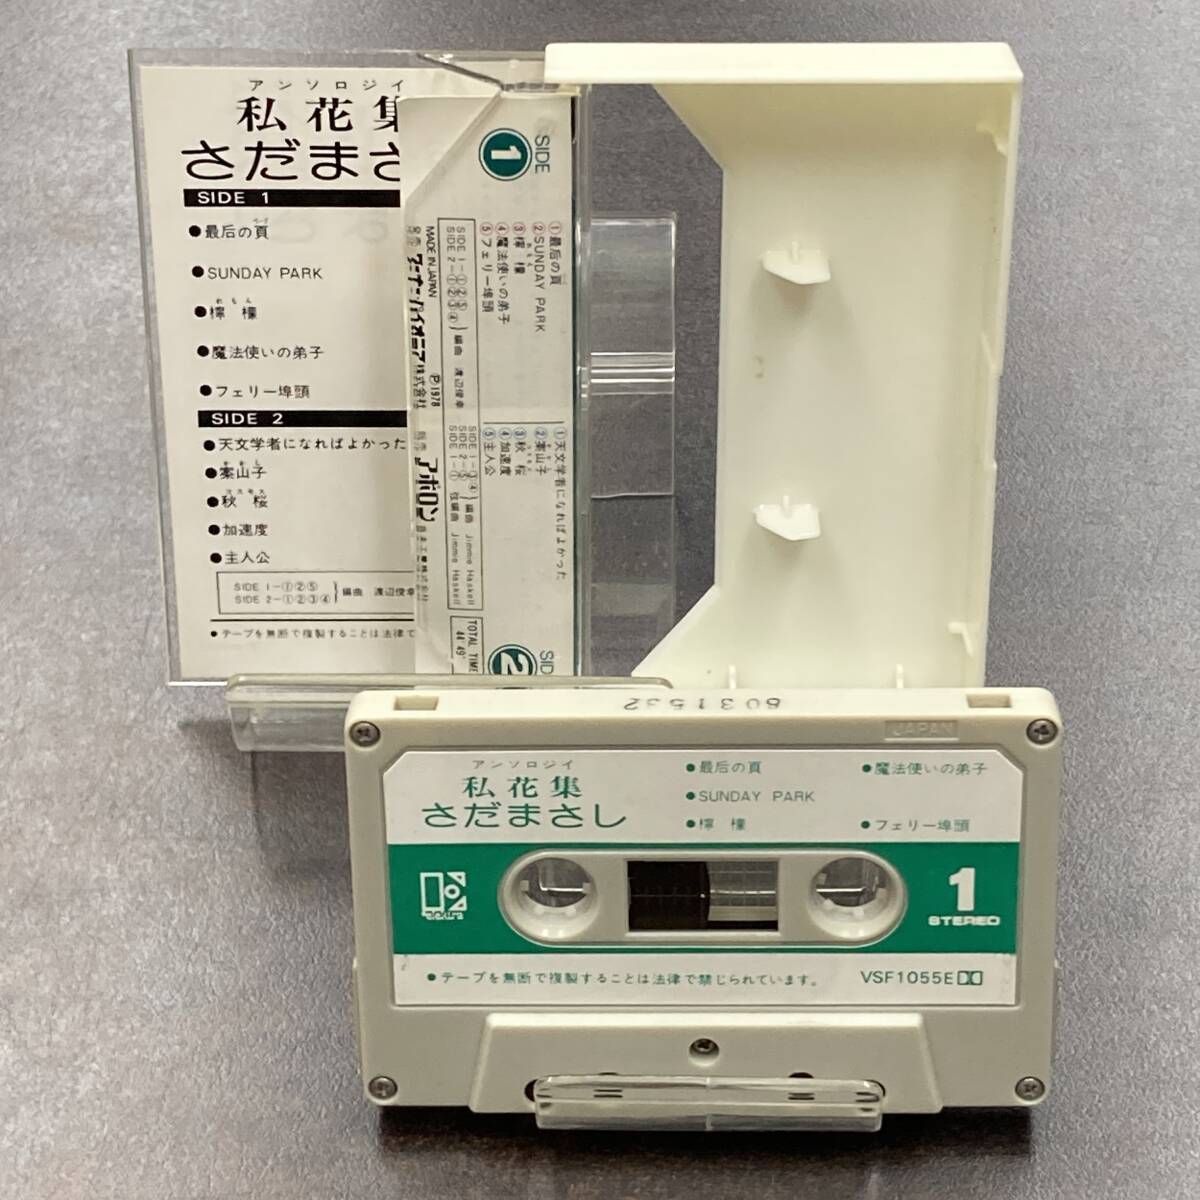 1165M さだまさし 私花集 カセットテープ / Masashi Sada Citypop Cassette Tapeの画像2